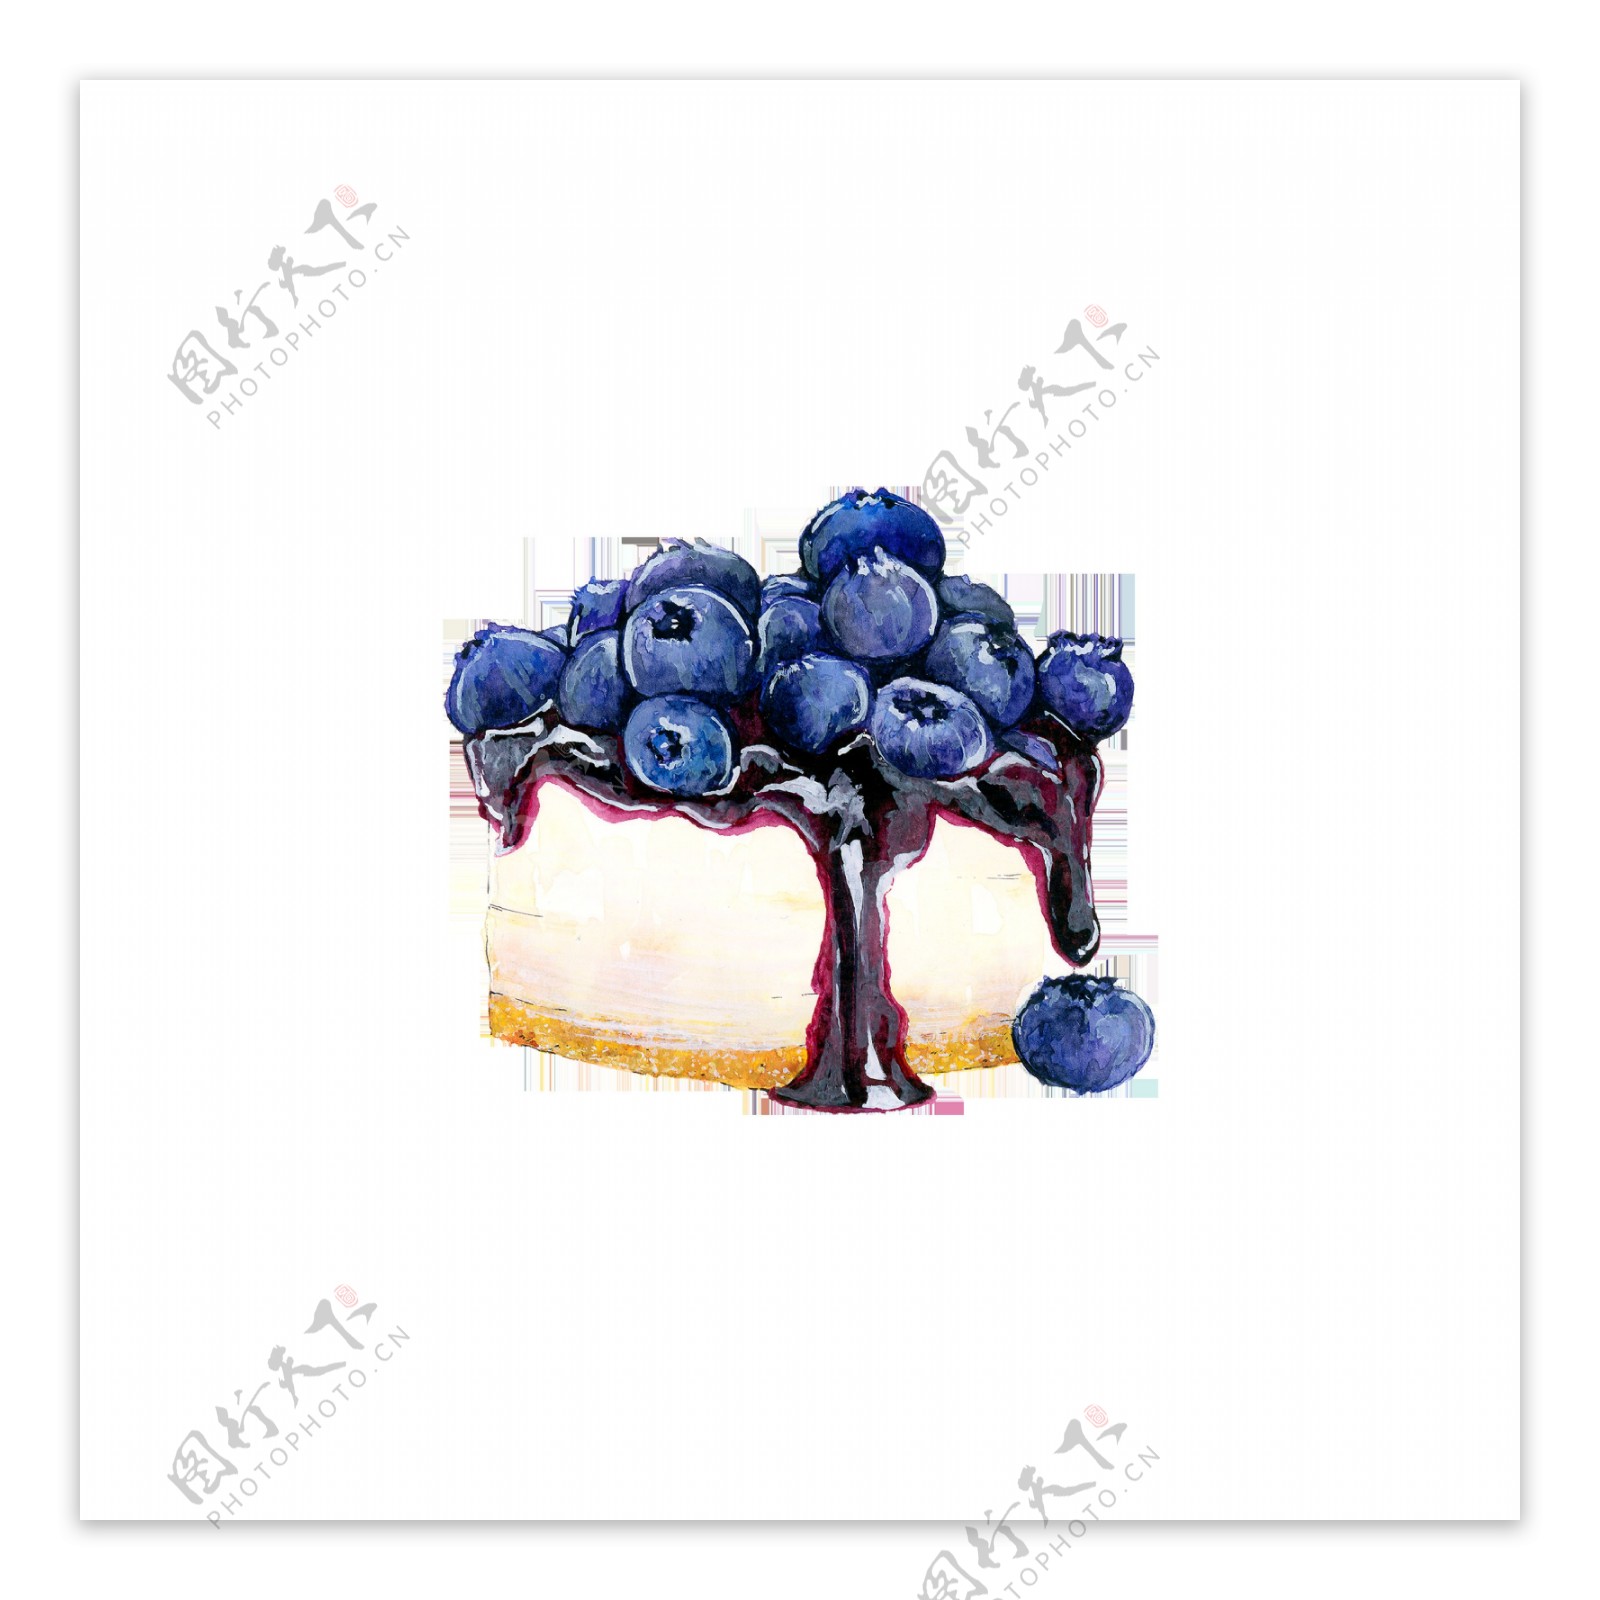 蓝莓蛋糕卡通透明素材